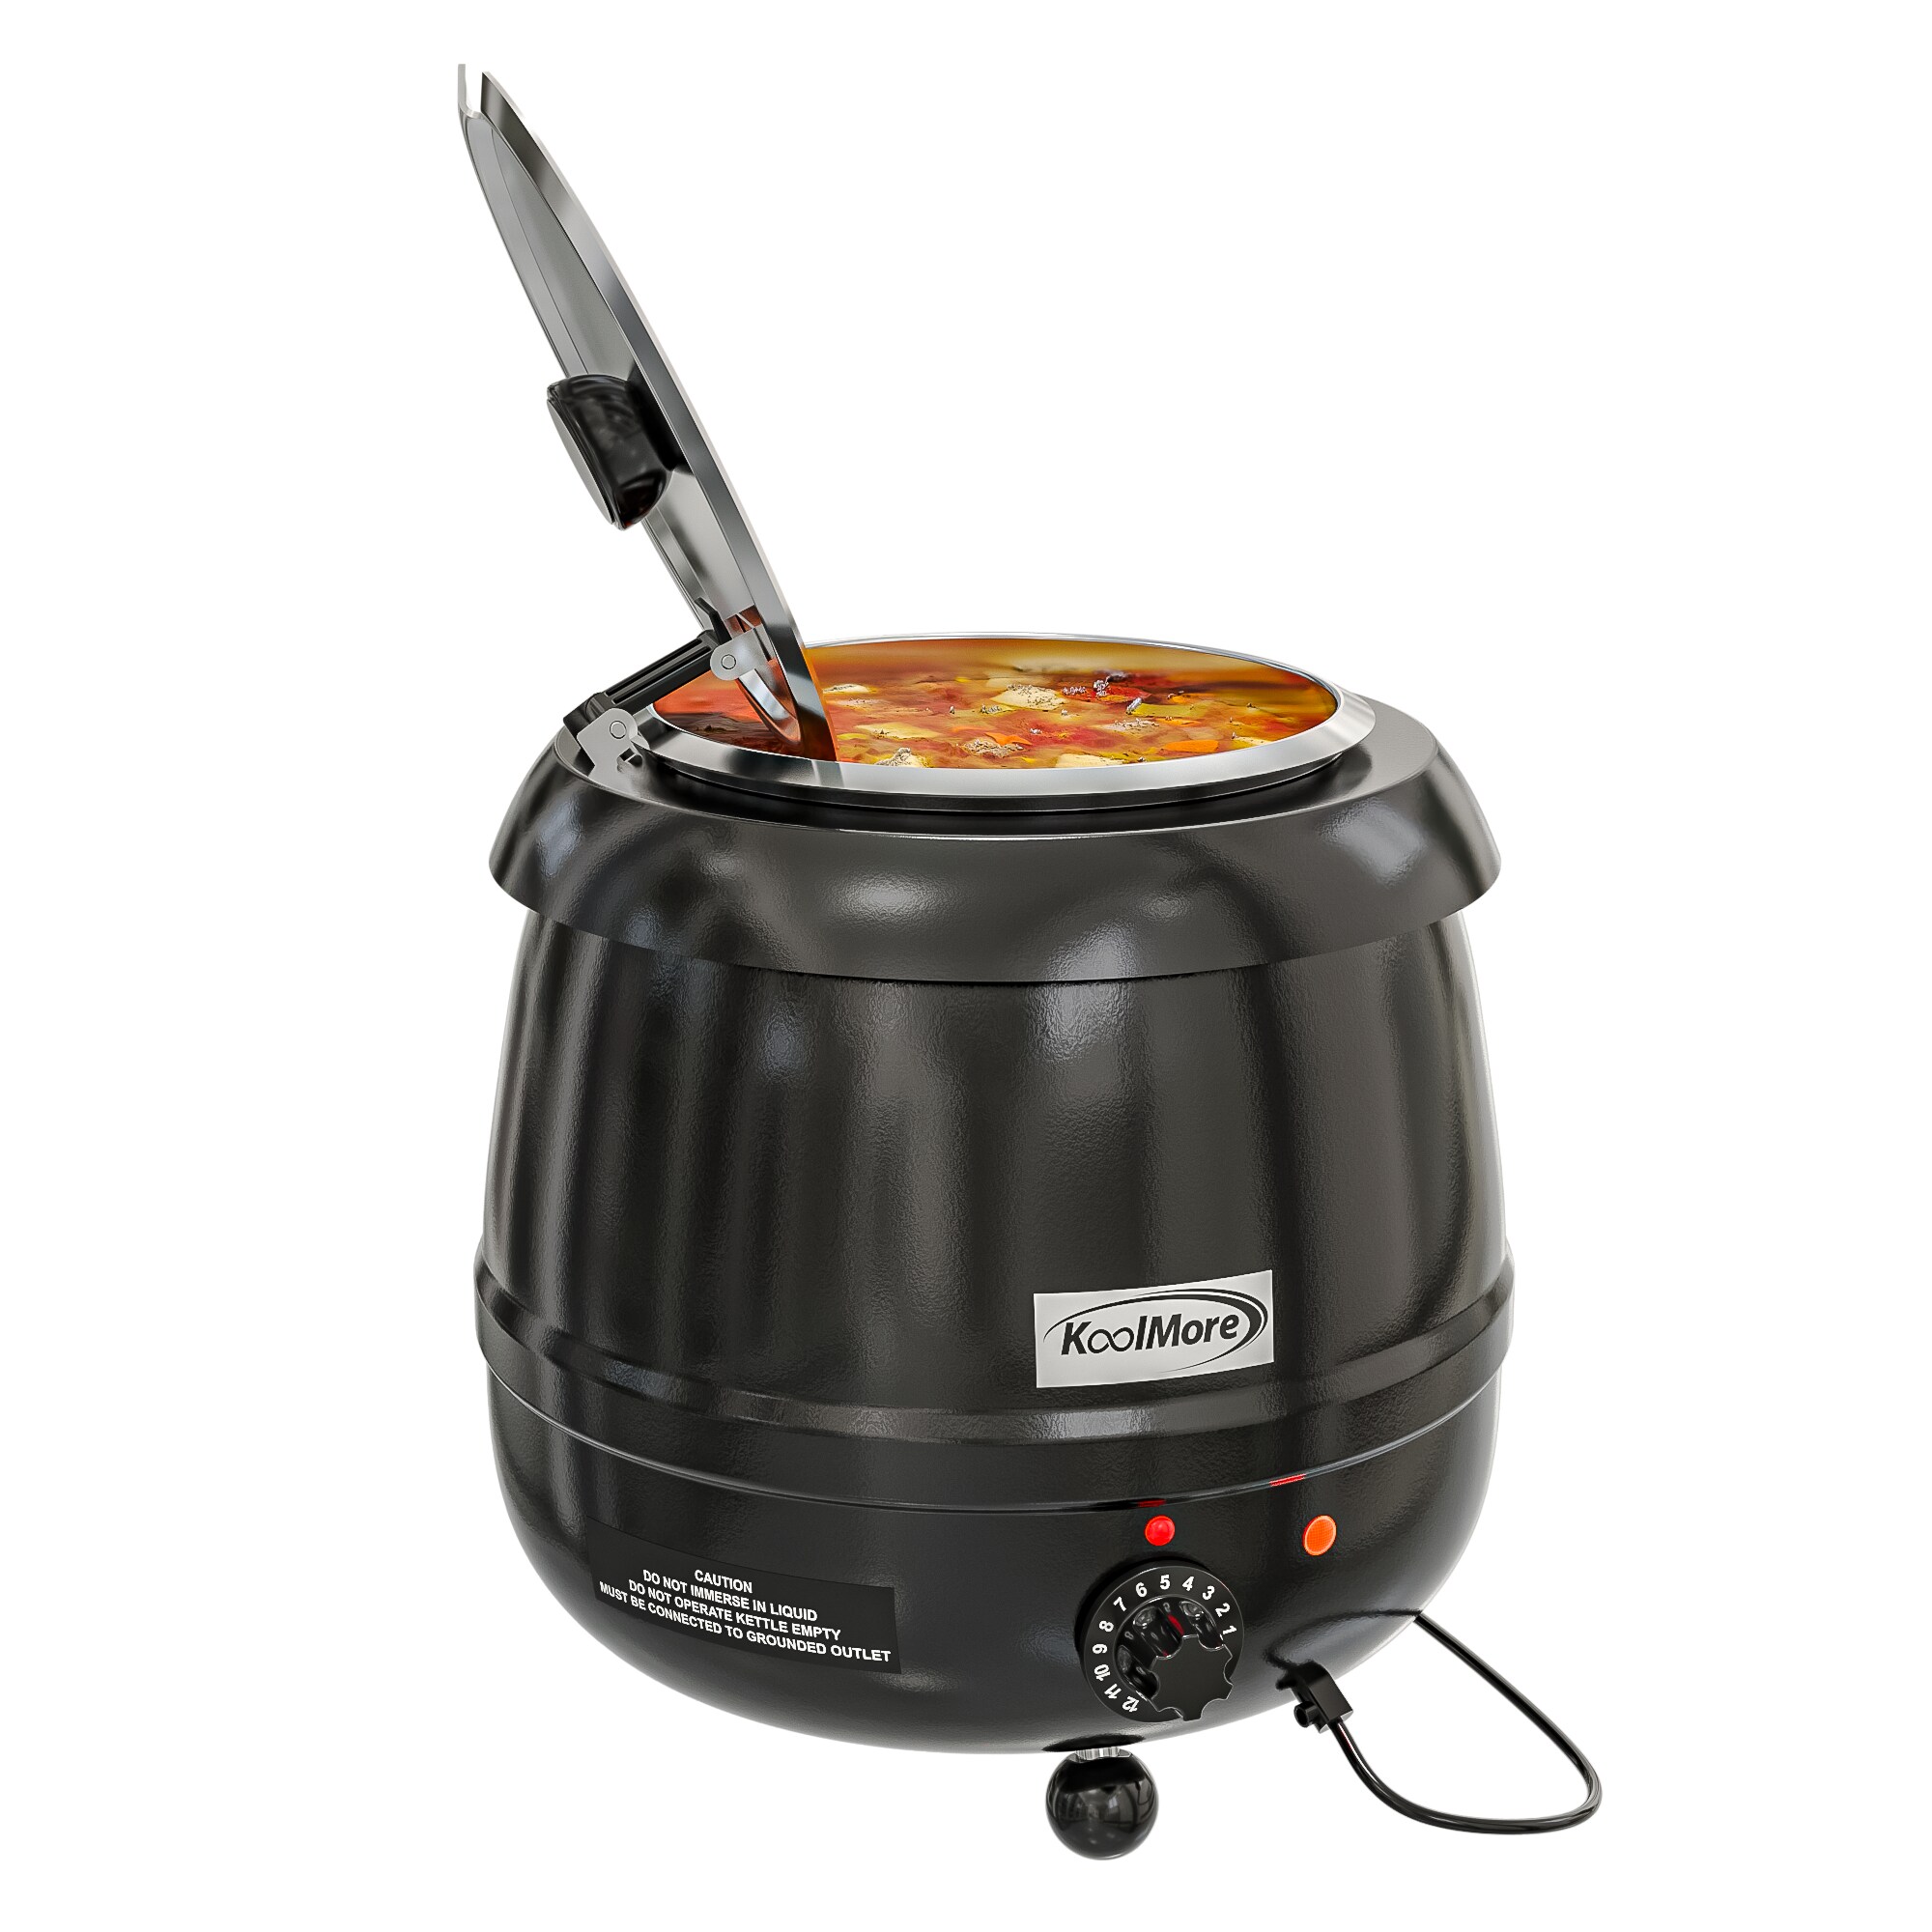 Winco ESW-66 Electric Soup Warmer